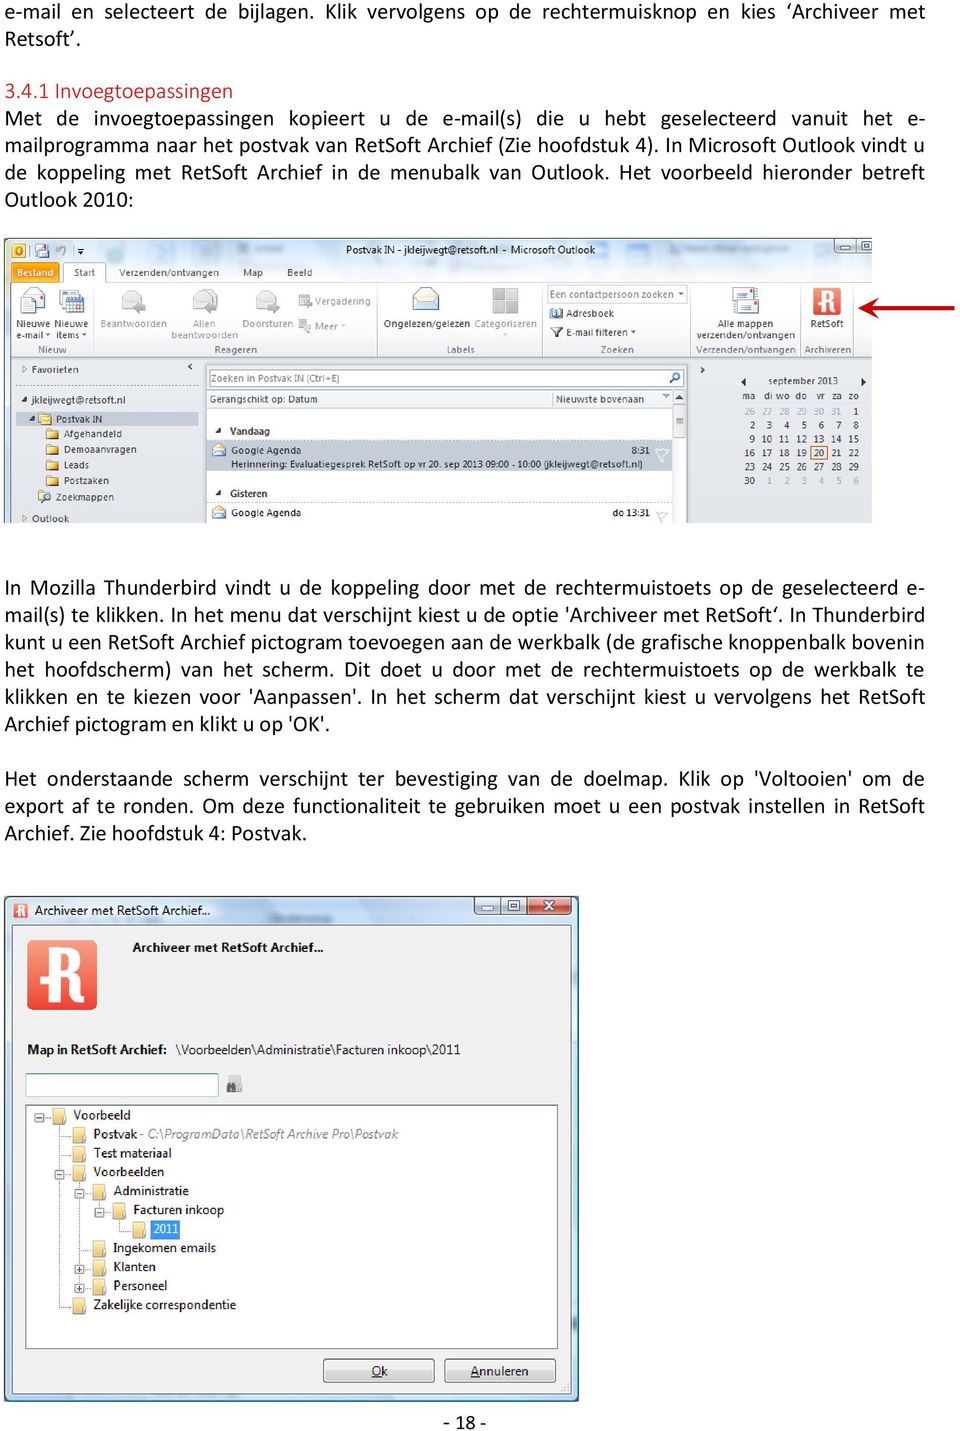 In Microsoft Outlook vindt u de koppeling met RetSoft Archief in de menubalk van Outlook.